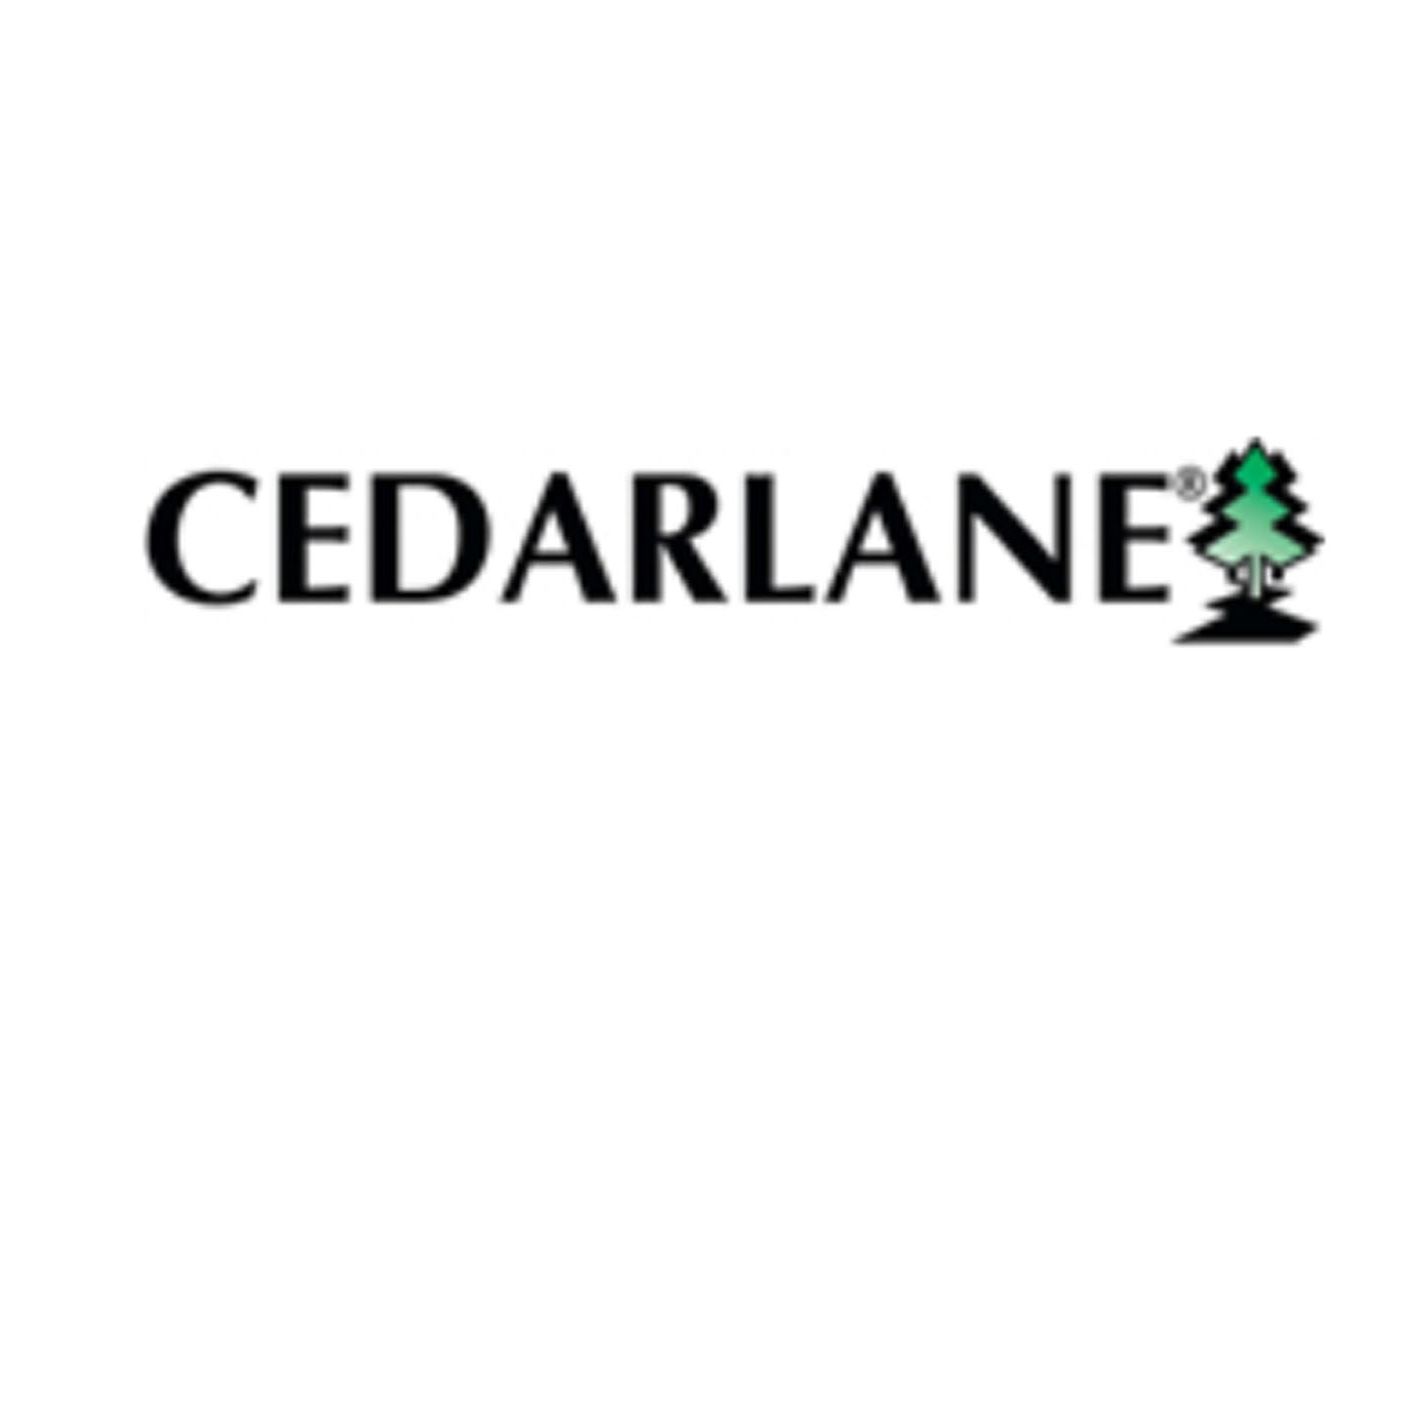 Cedarlane  淋巴细胞分离柱、 单克隆抗体、 多克隆抗体、培养基、生化试剂